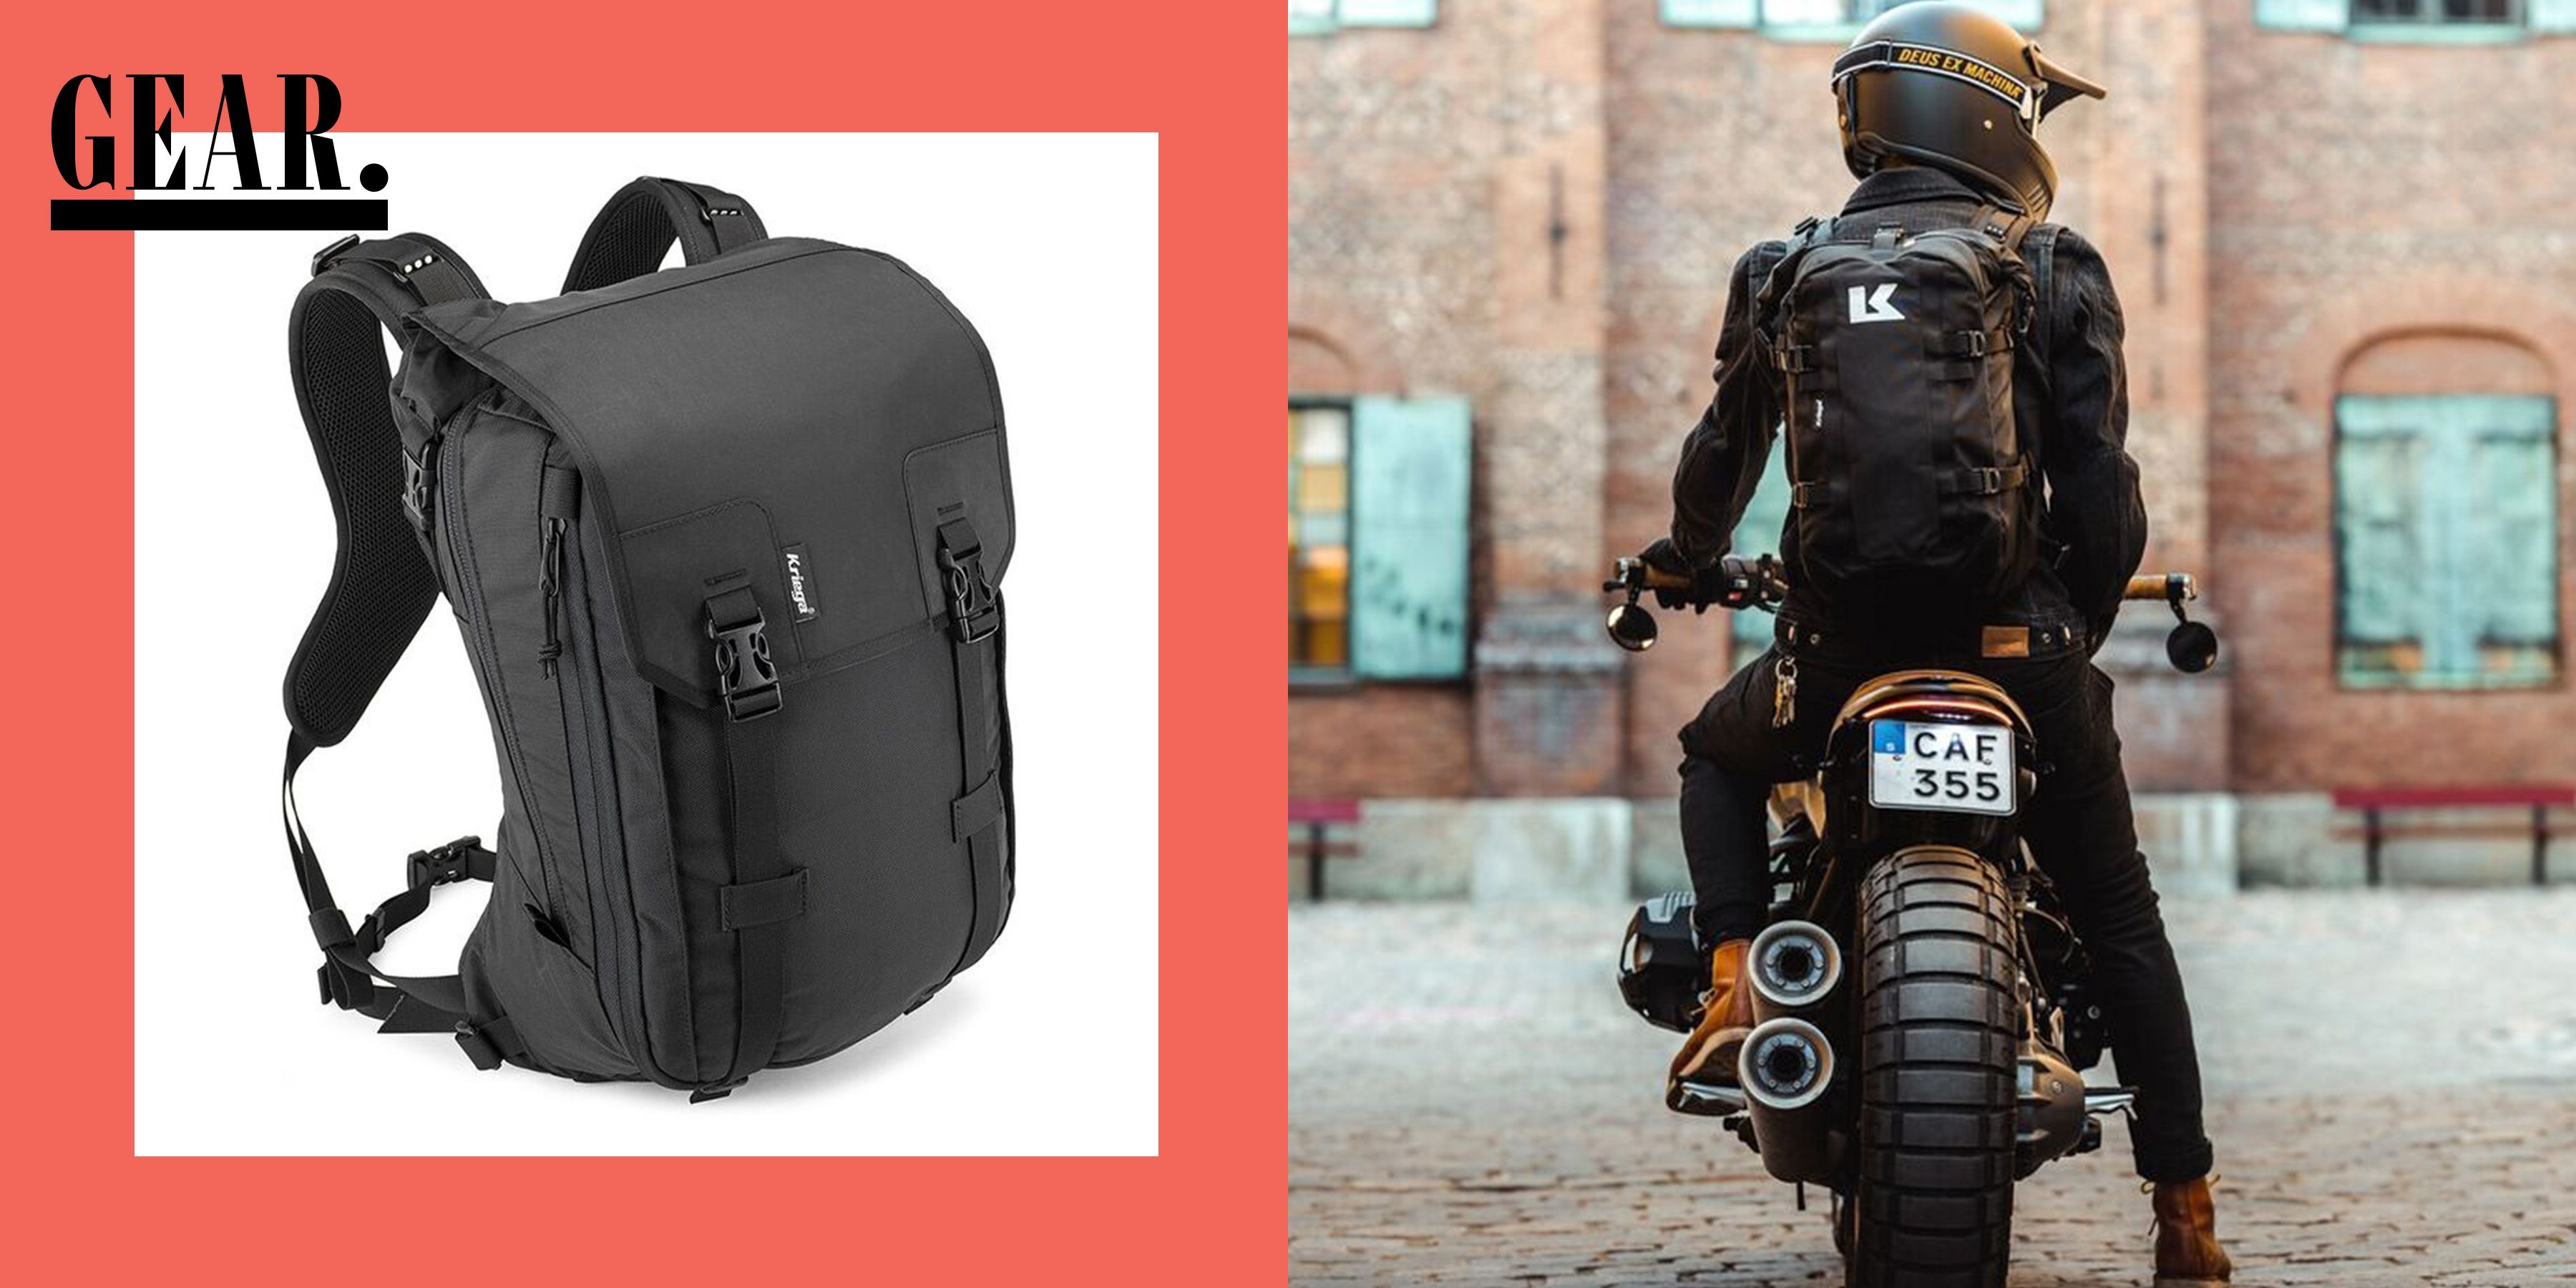 Motorcycle Bag Mochila Moto Motorcycle Backpack Waterproof Helmet